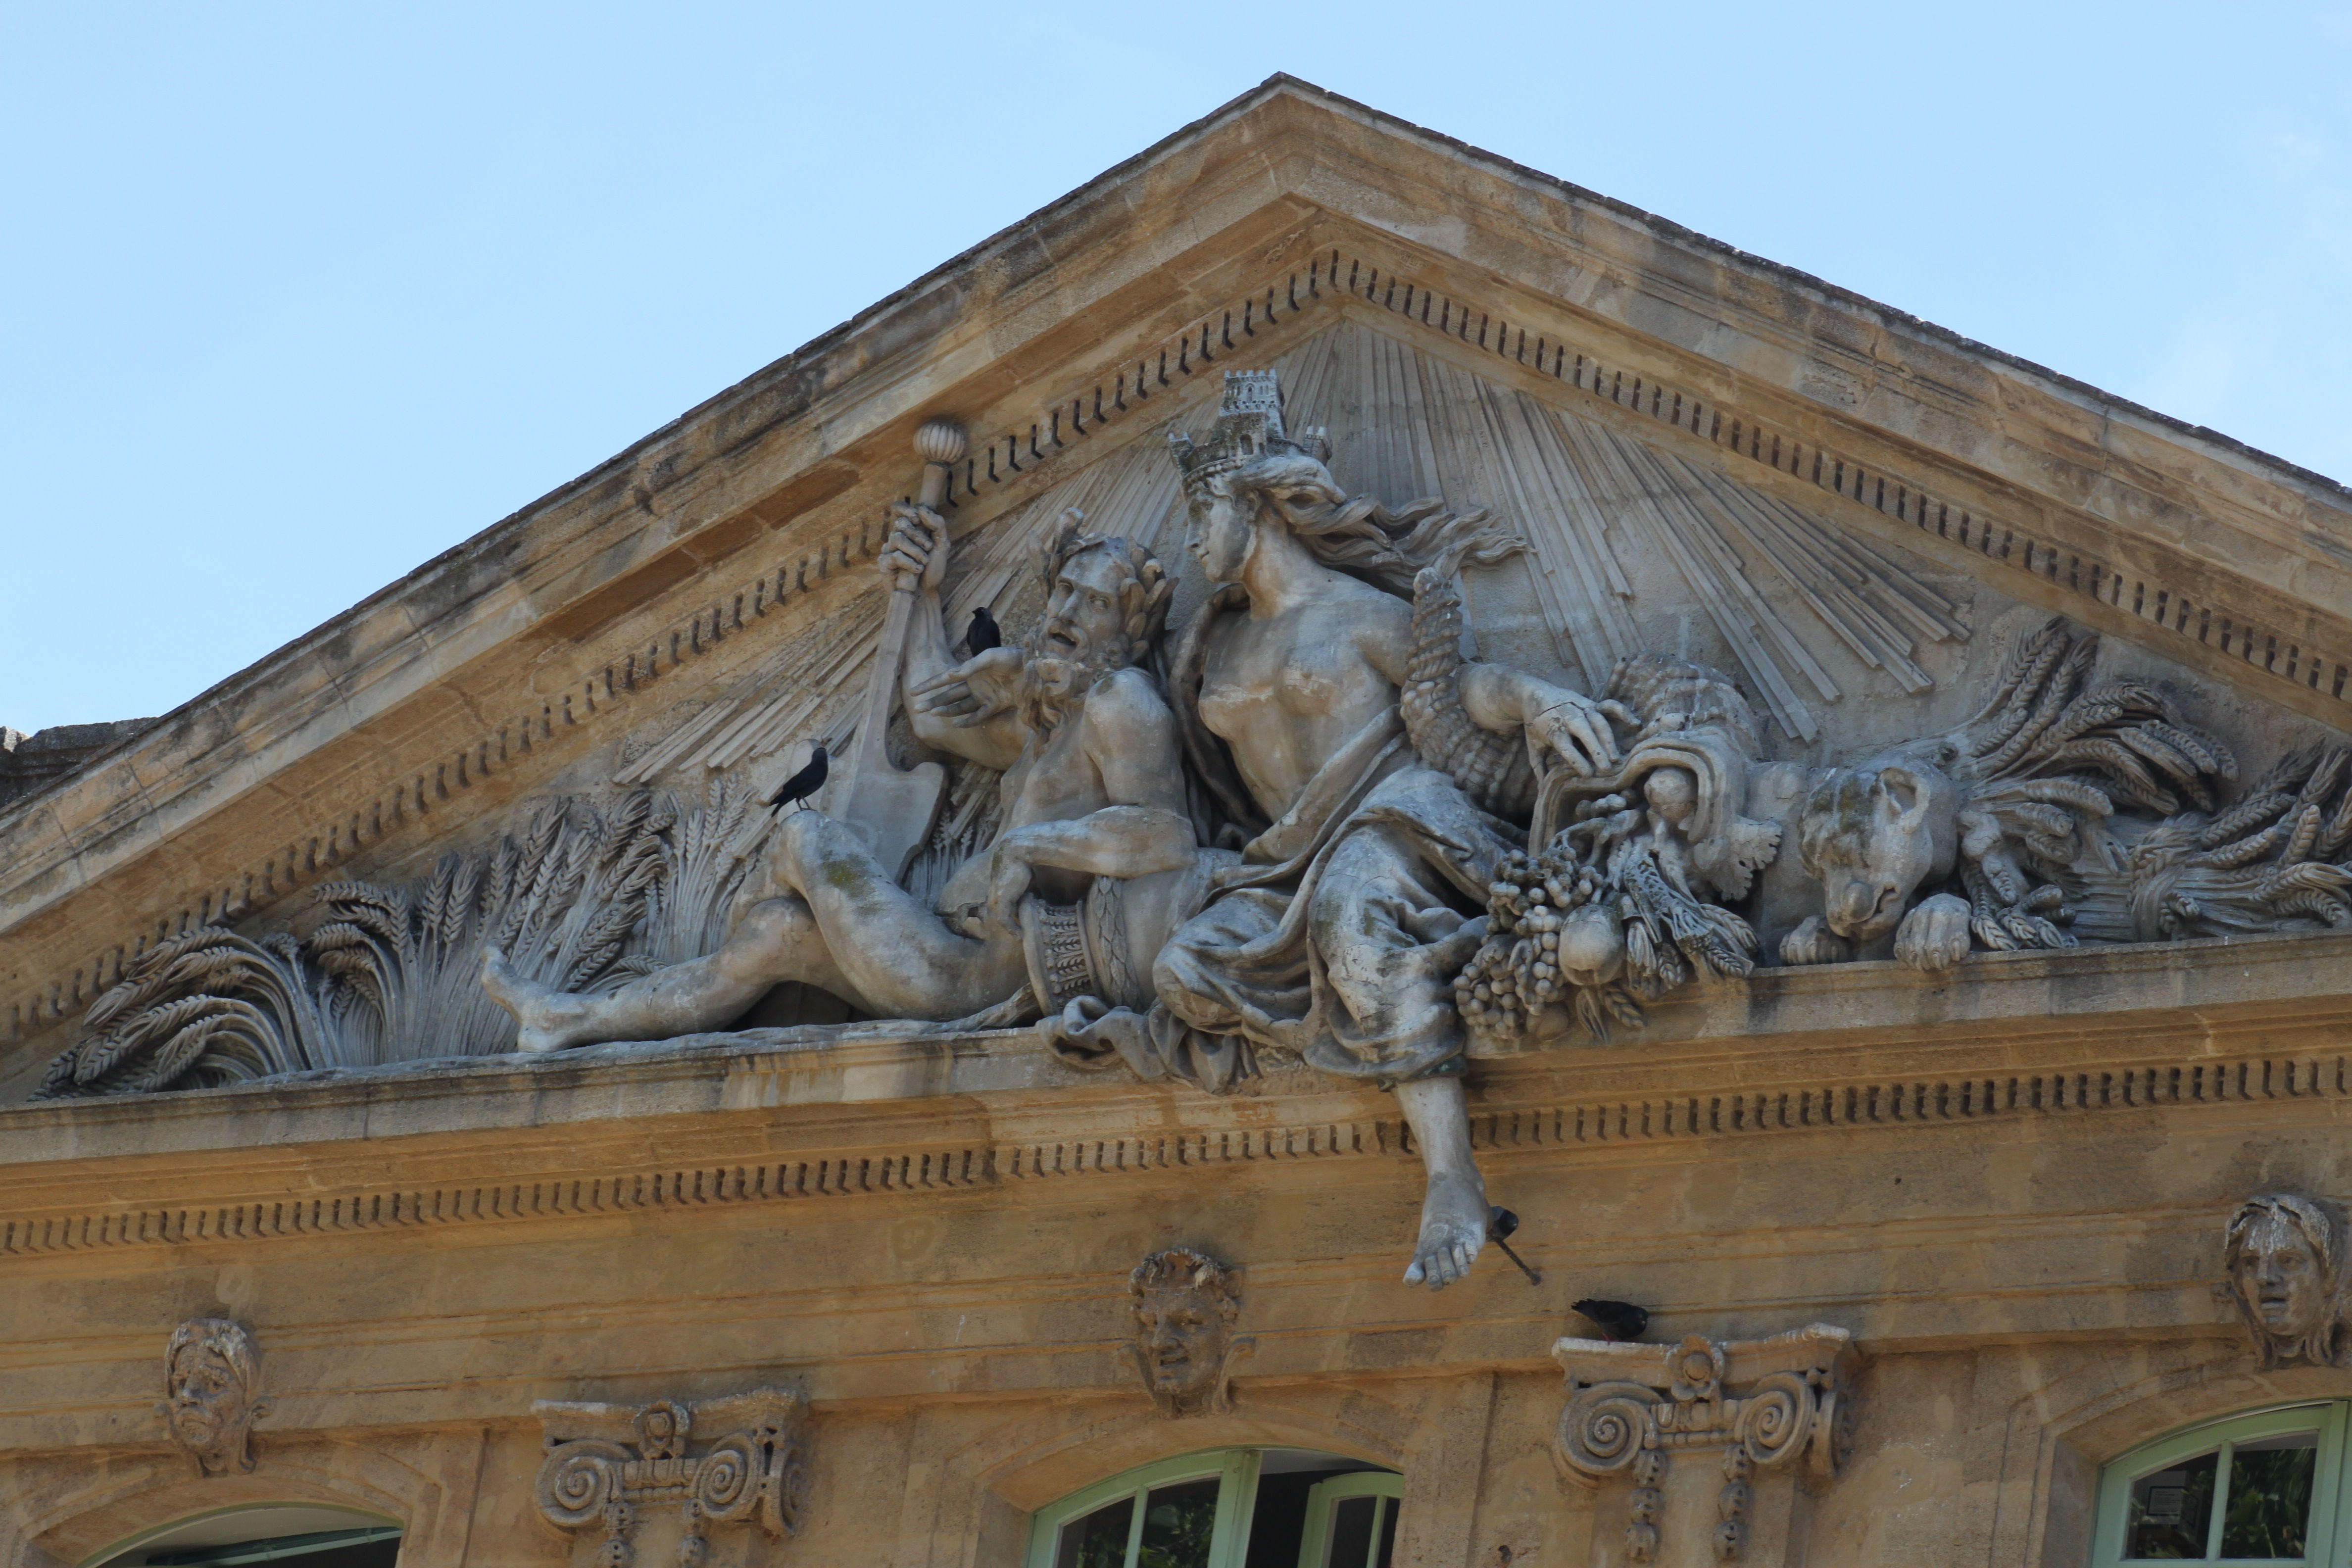 Mairie d'Aix-en-Provence